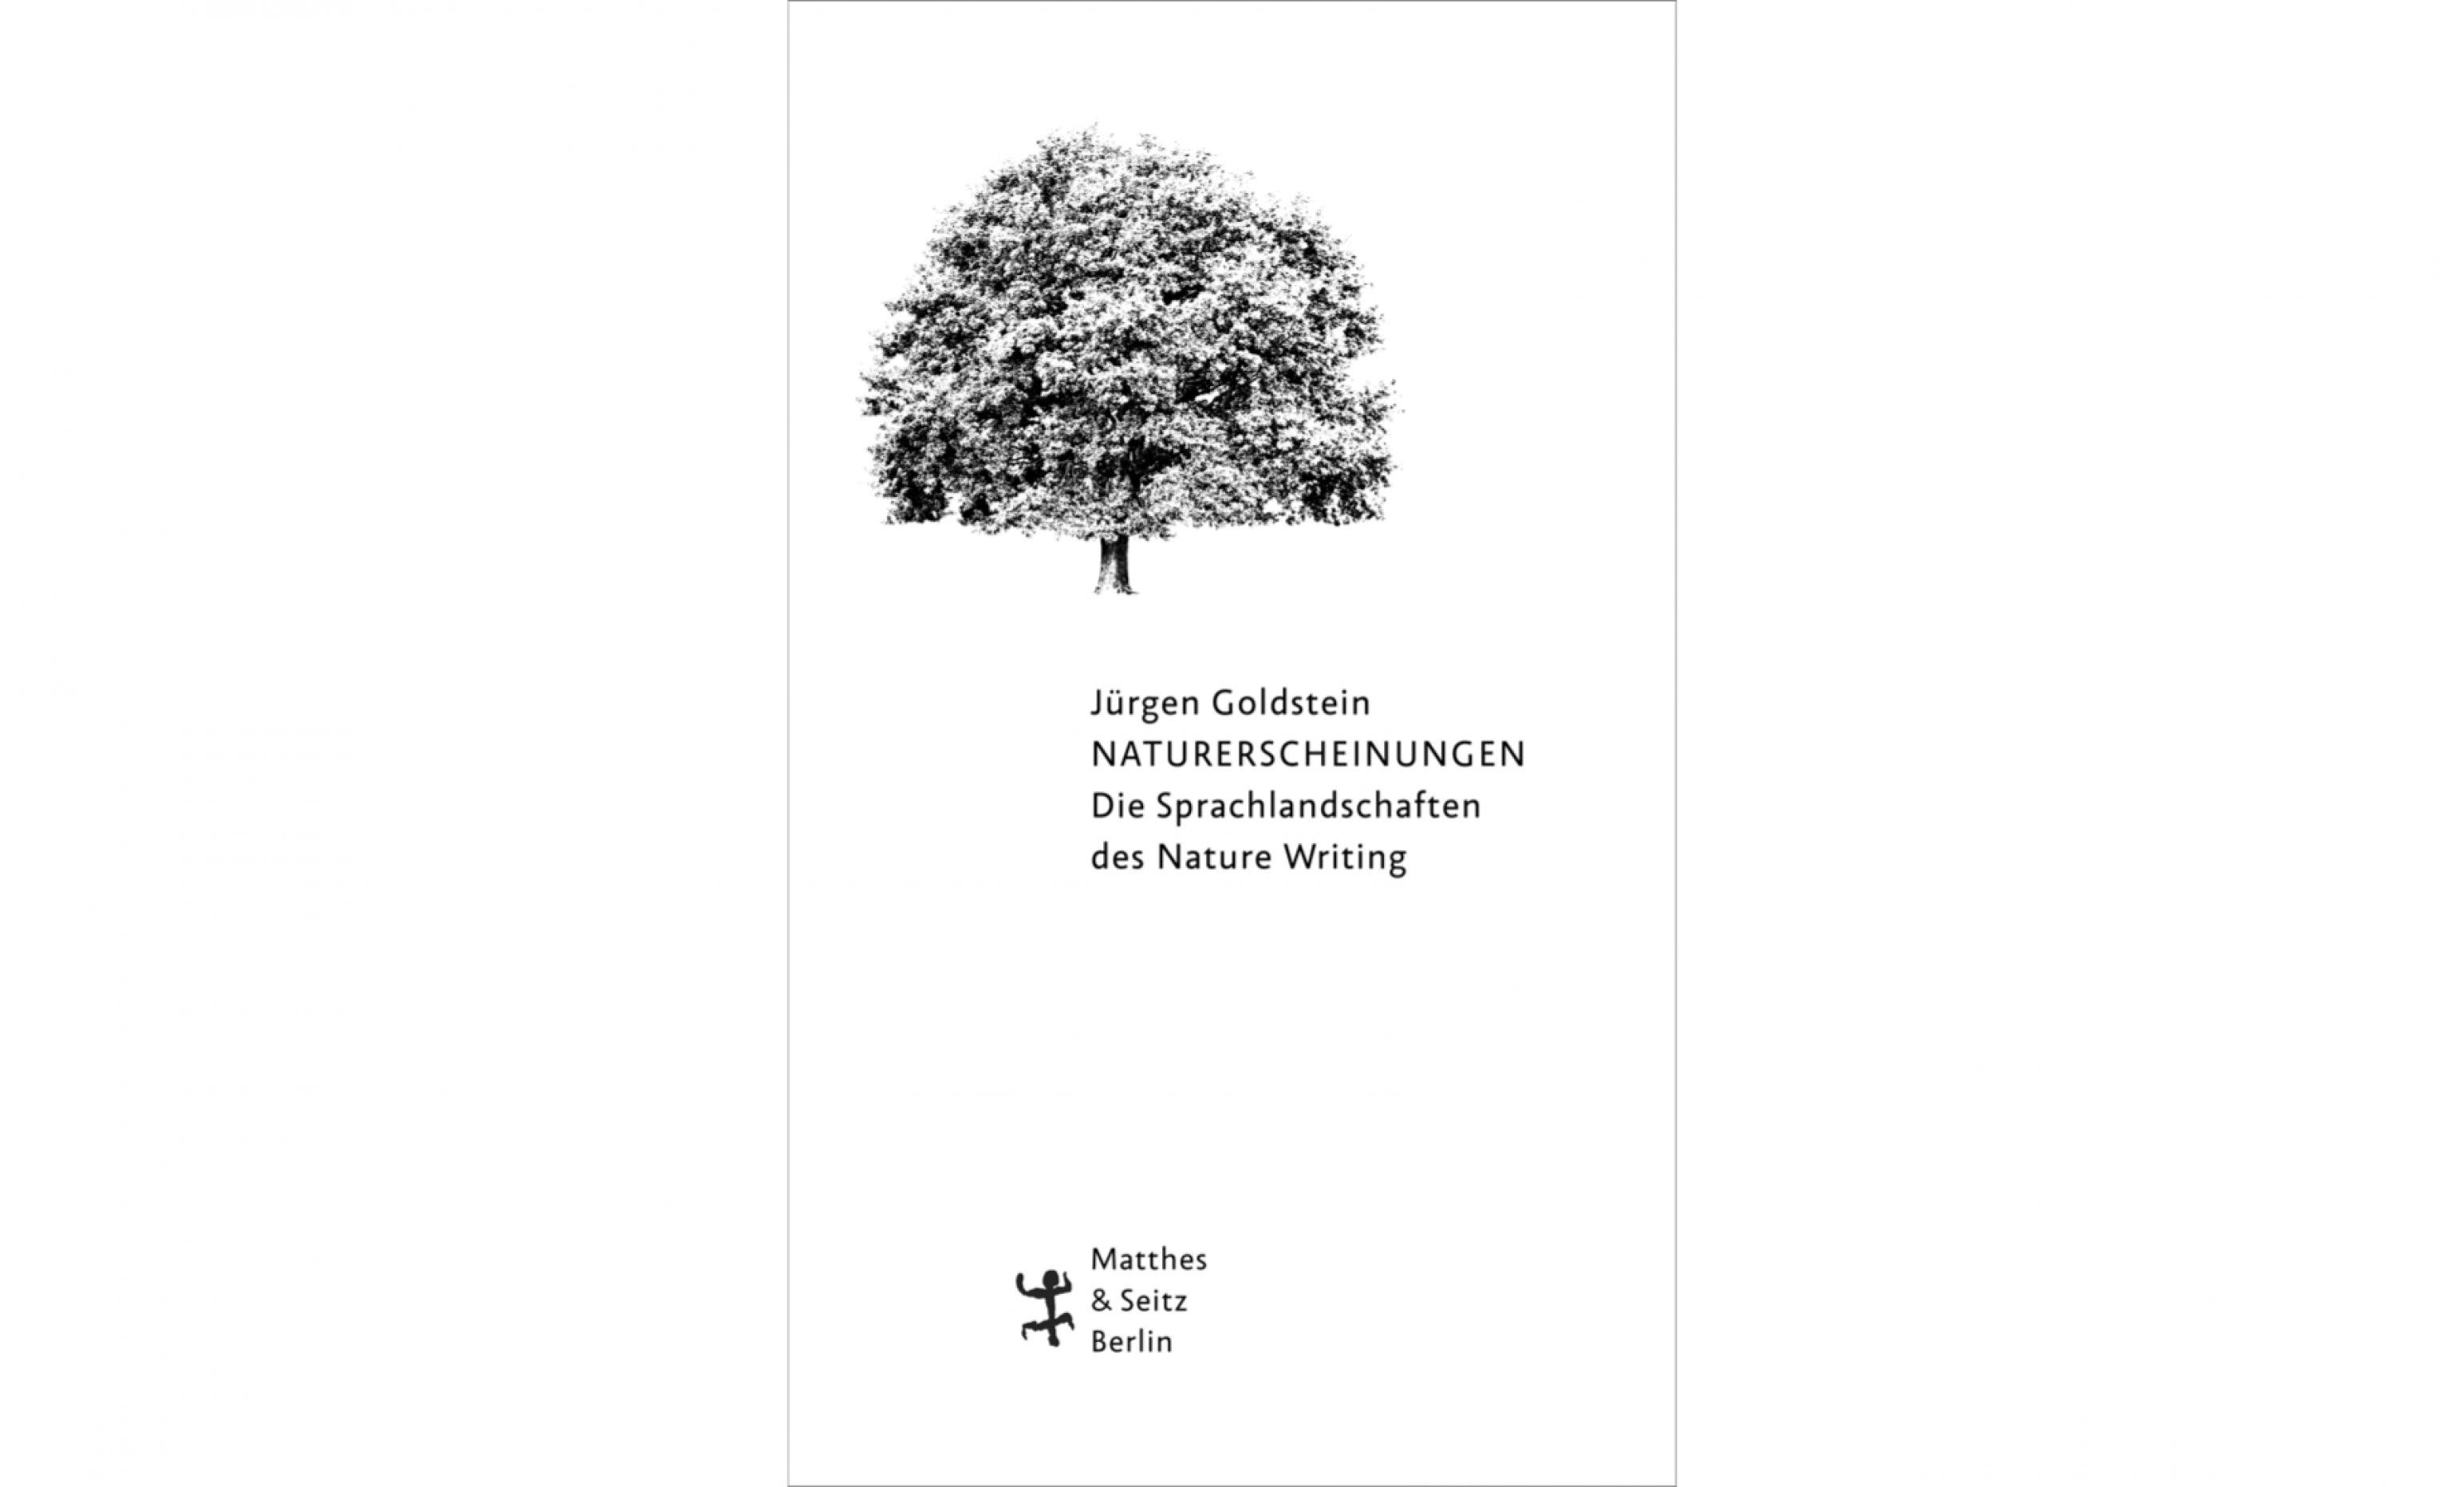 Buchcover: Jürgen Goldmann: Naturerscheinungen. Die Sprachlandschaften des Nature Writing.